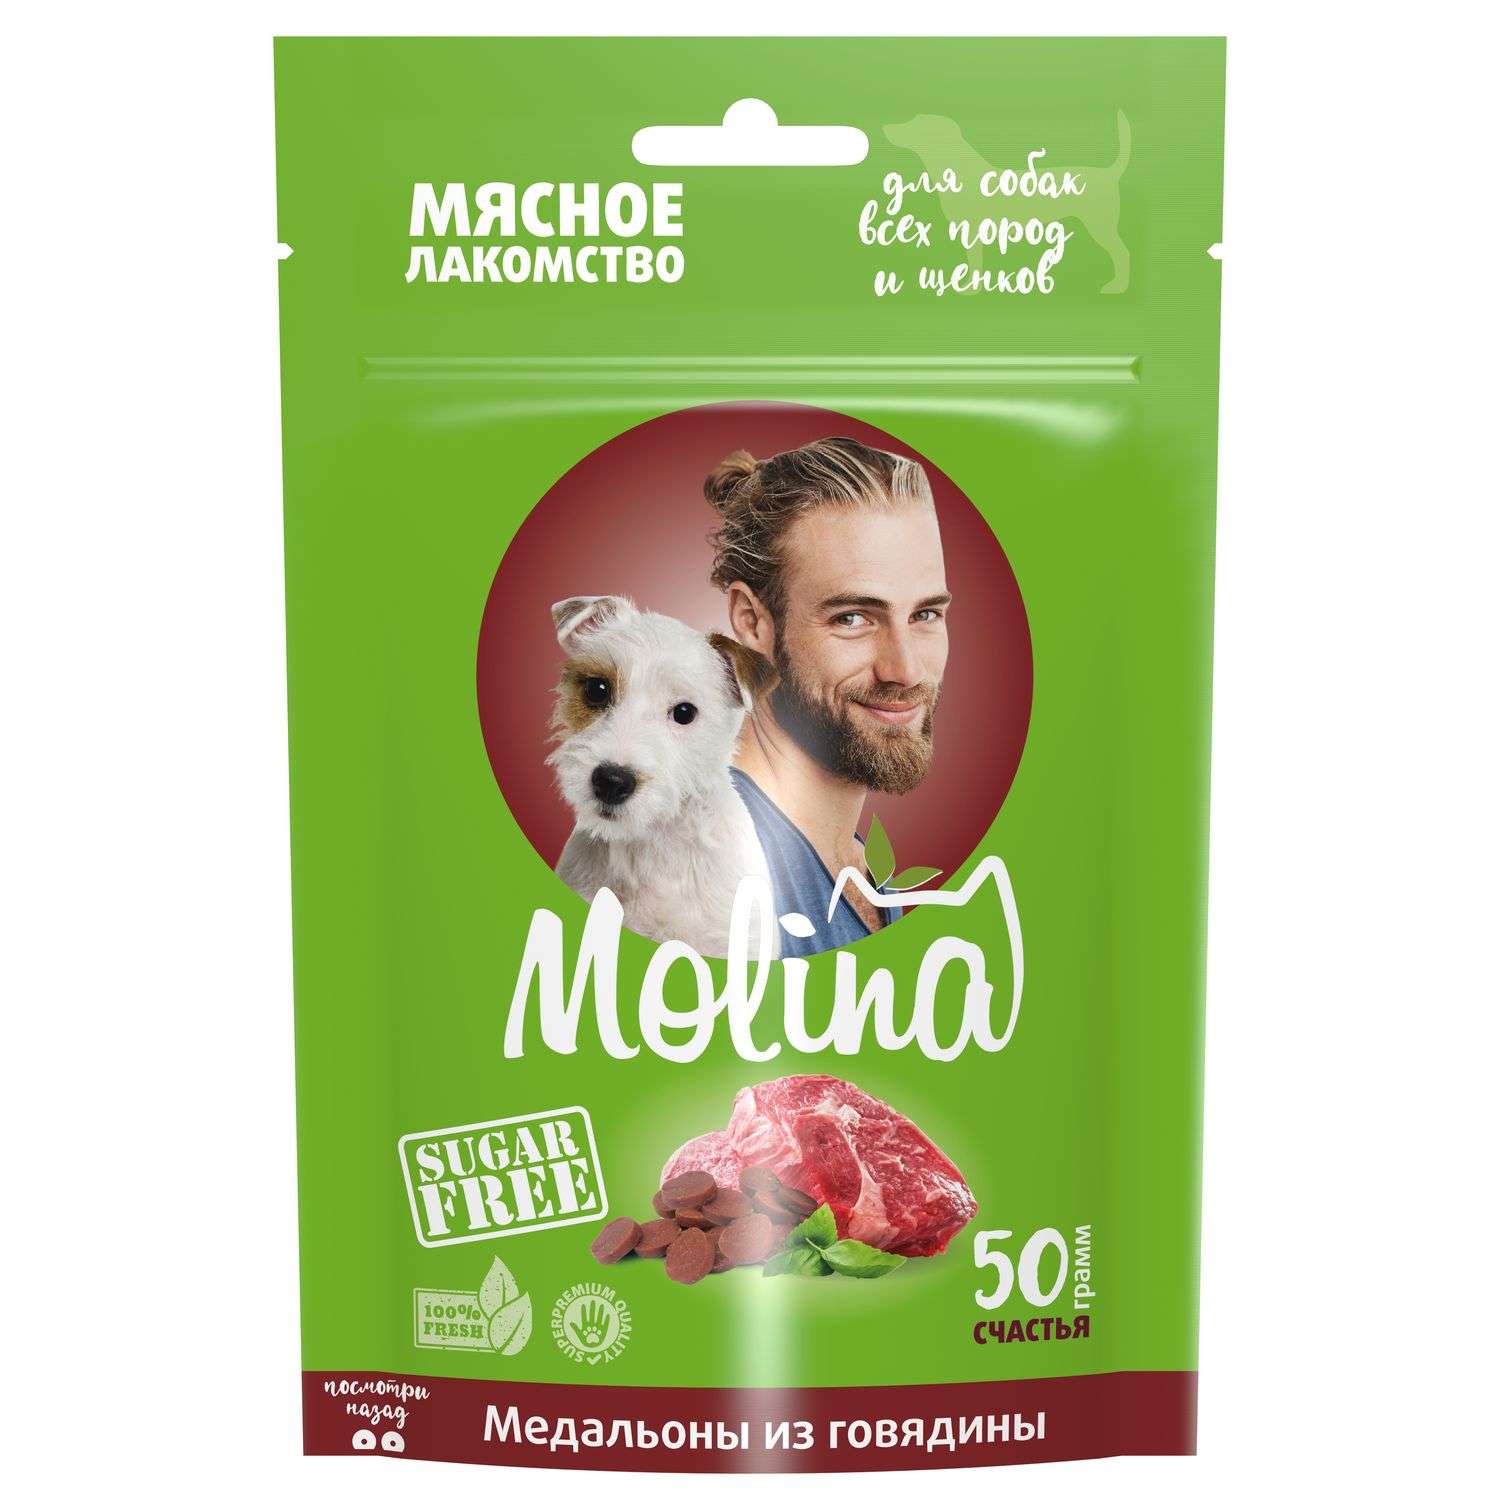 Лакомство для собак и щенков Molina медальоны из говядины 50г - фото 1